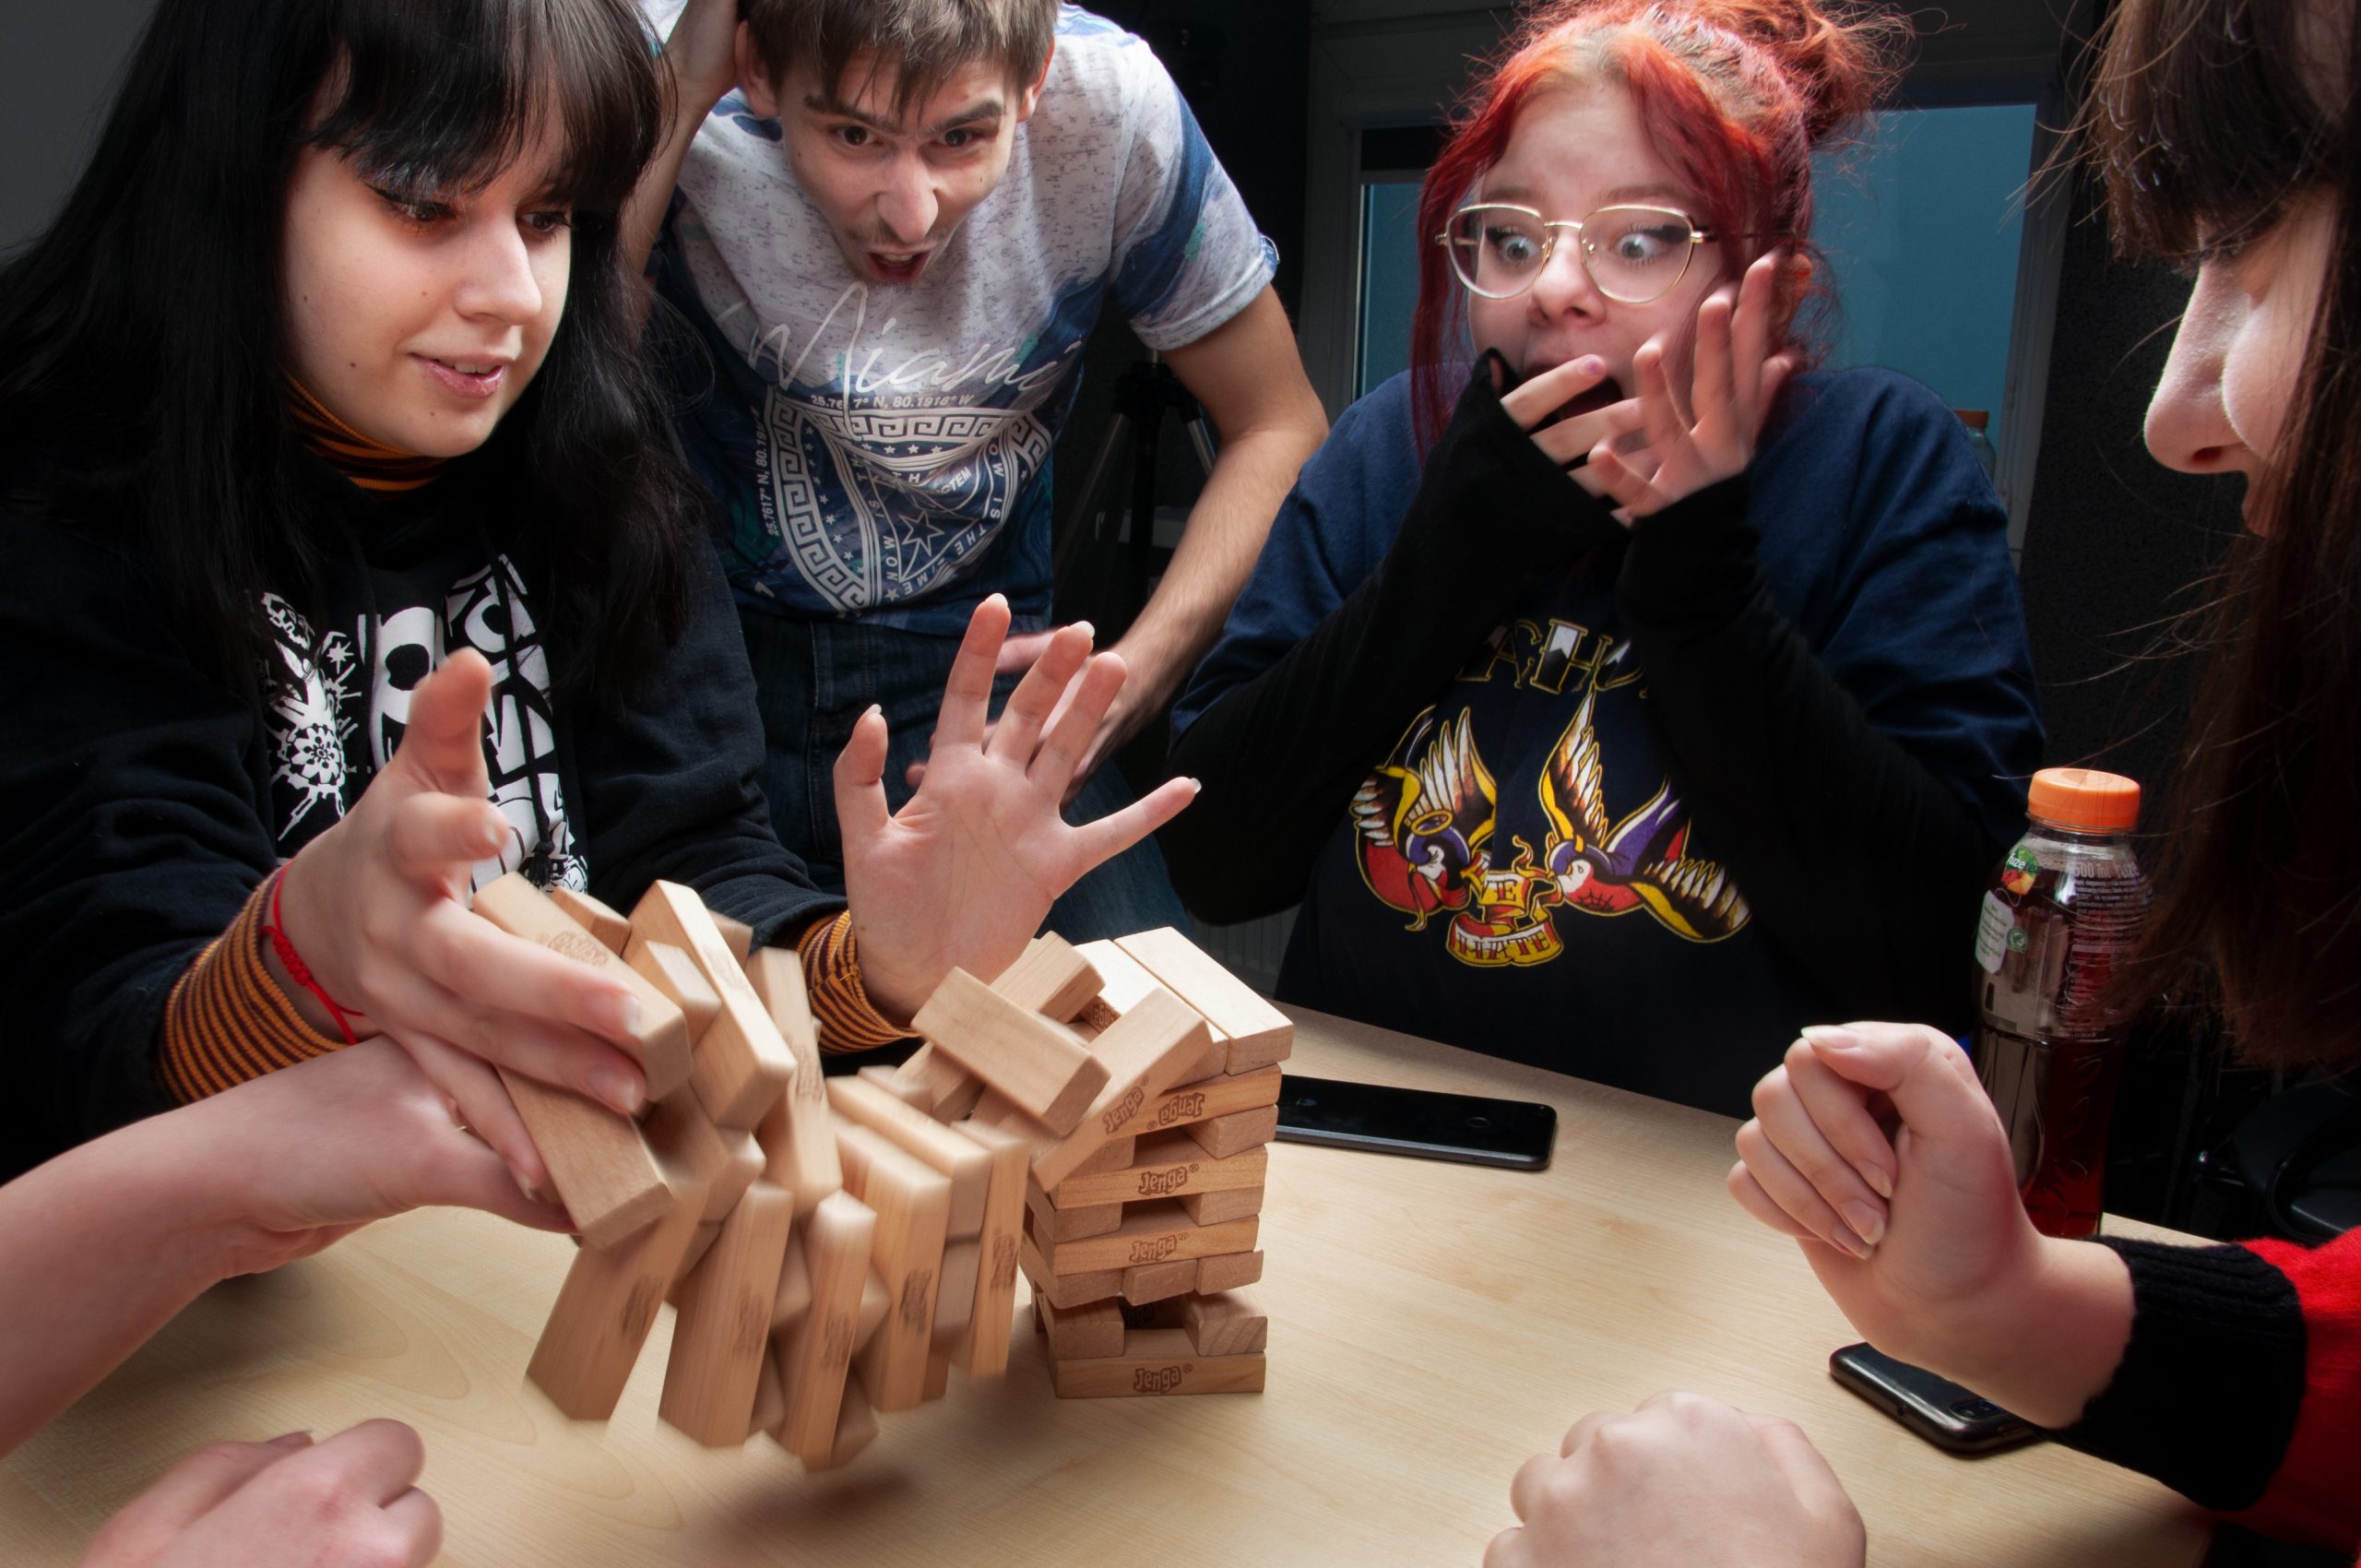 cztery młode osoby grają w grę Jenga, klosku rozsypują się na blat stolika